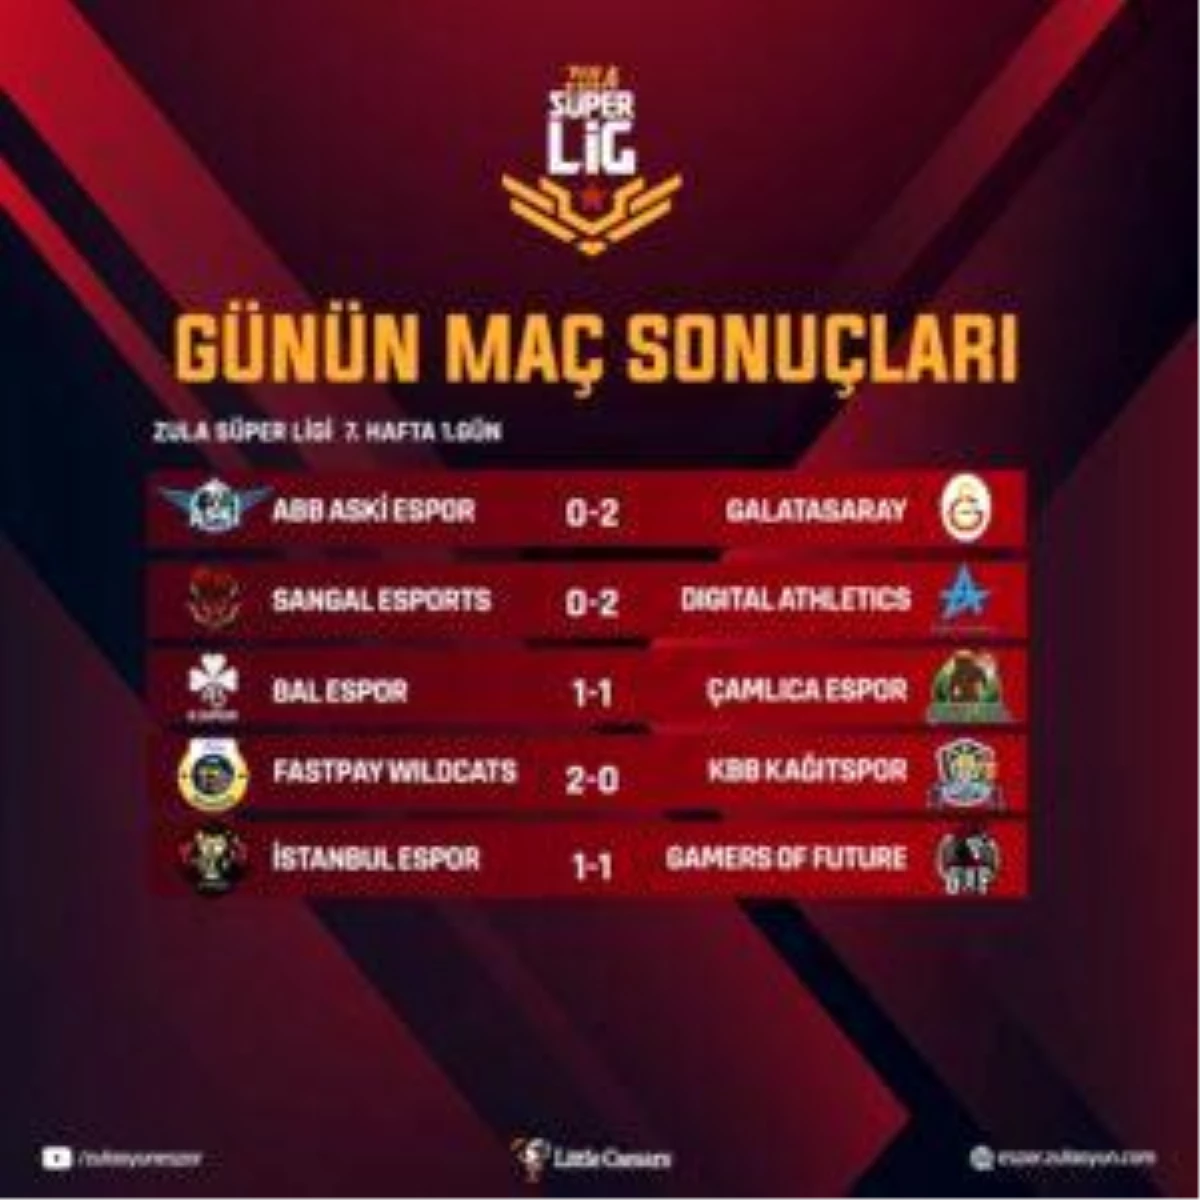 Zula Süper Lig Sezon 7 Hafta 7 Gün 1 maçları tamamlandı!